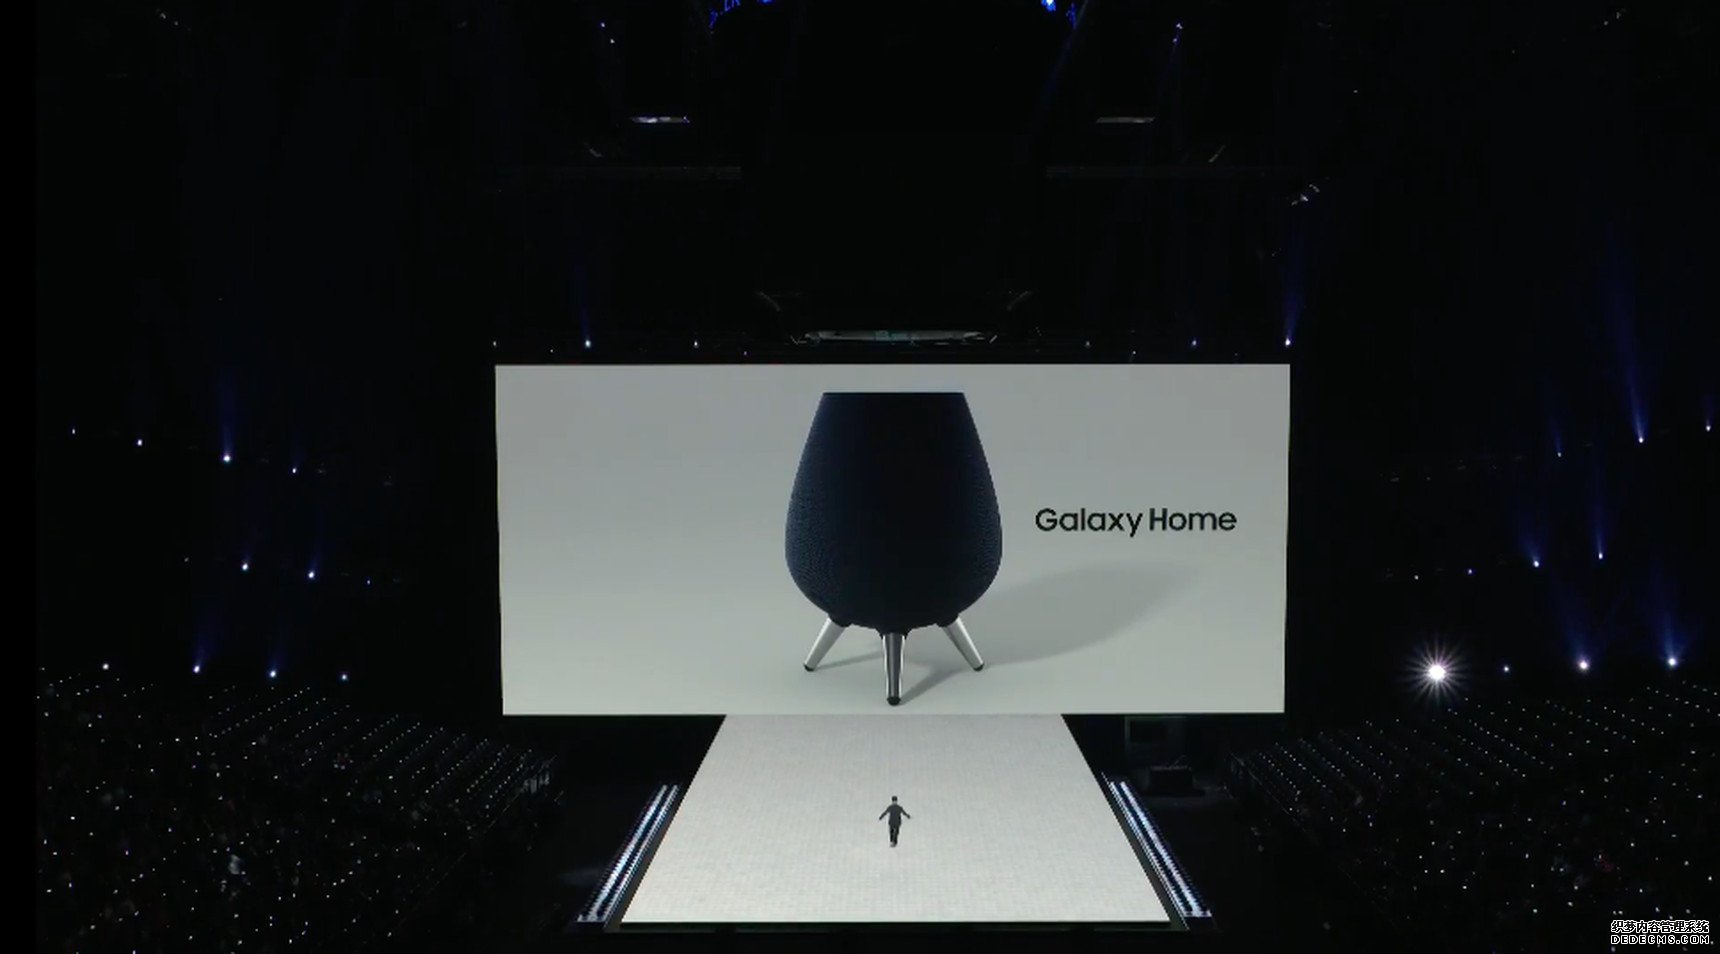 三星发布智能音箱Galaxy Home 搭配Bixby智能助手